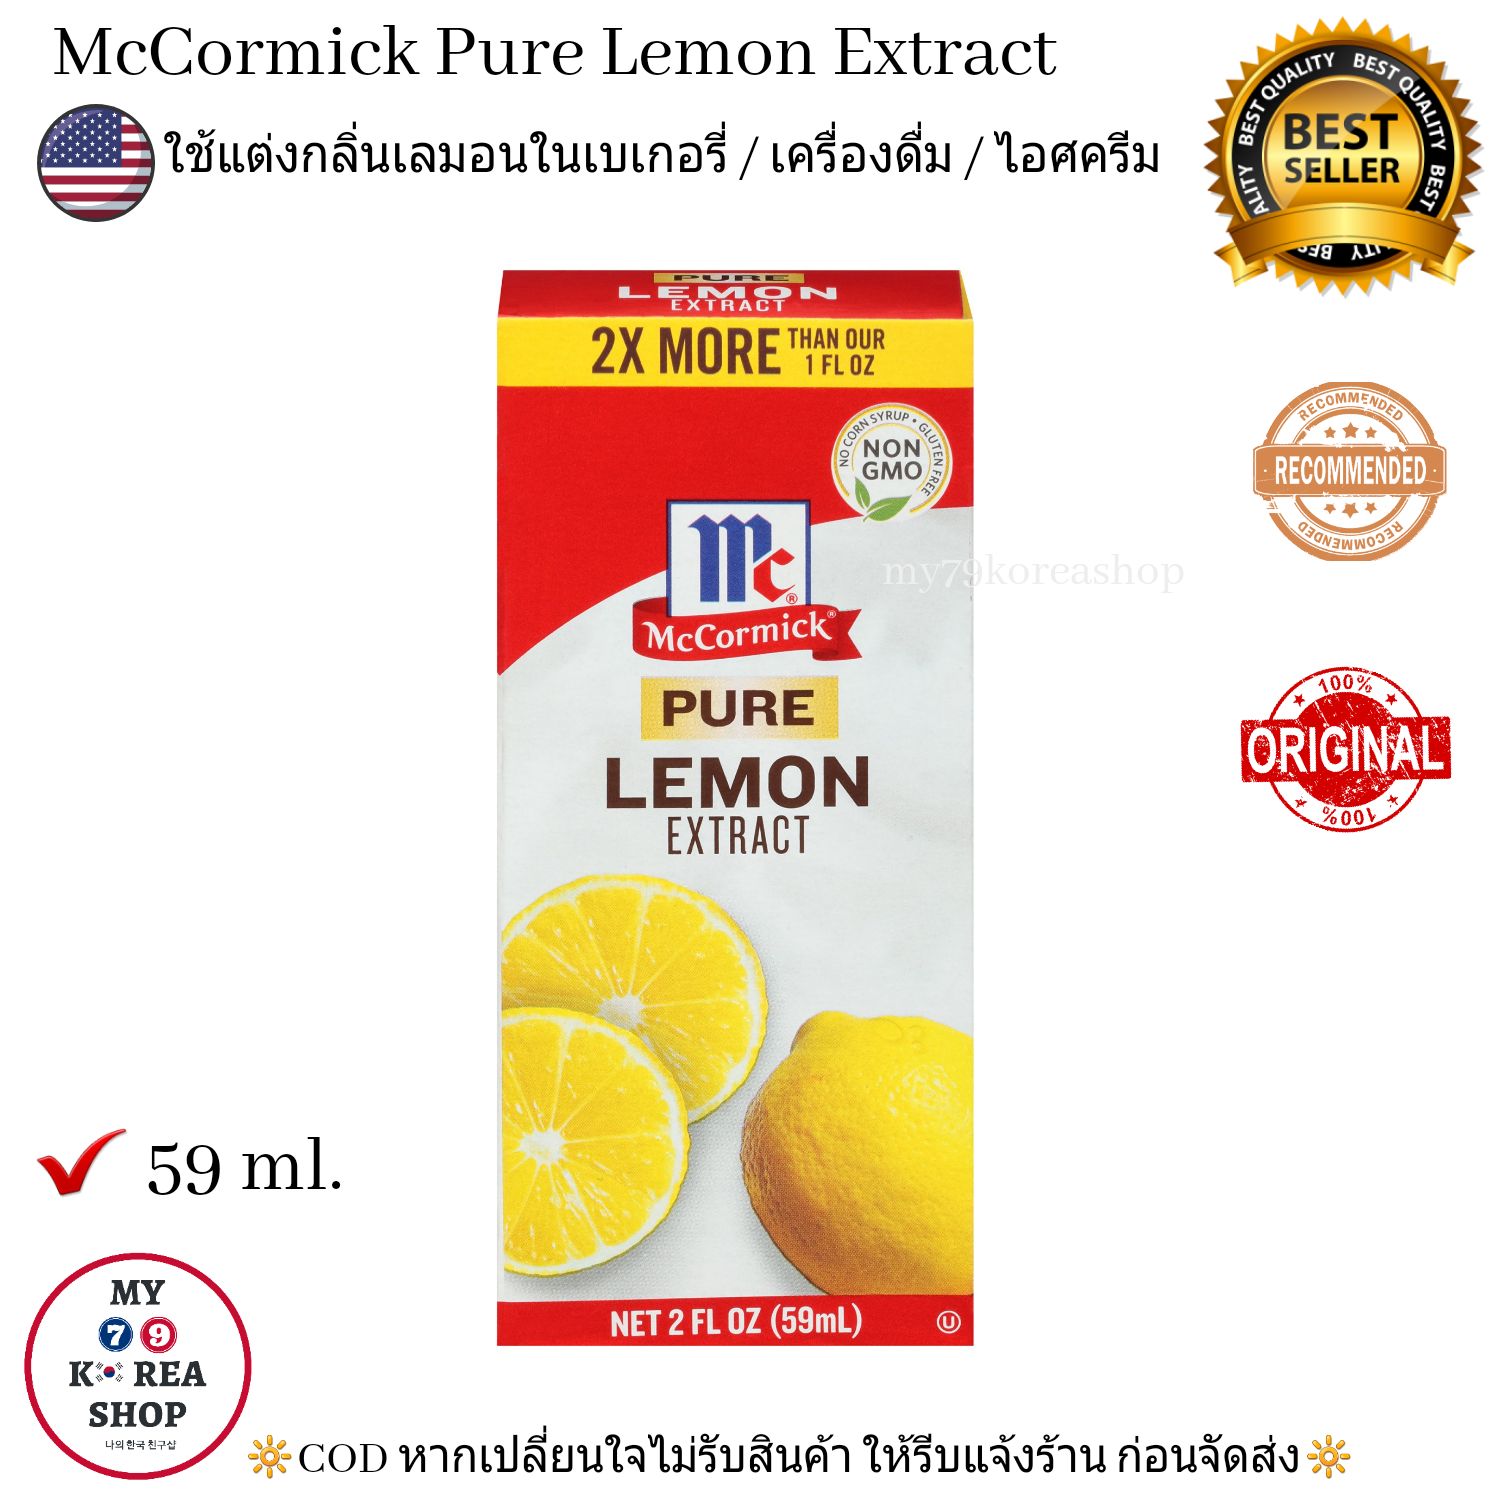 McCormick Pure Lemon Extract 59 ml. แม็คคอมิก เพิ่มกลิ่นเลมอนในเบเกอรี่ / เครื่องดื่ม / ไอศครีม